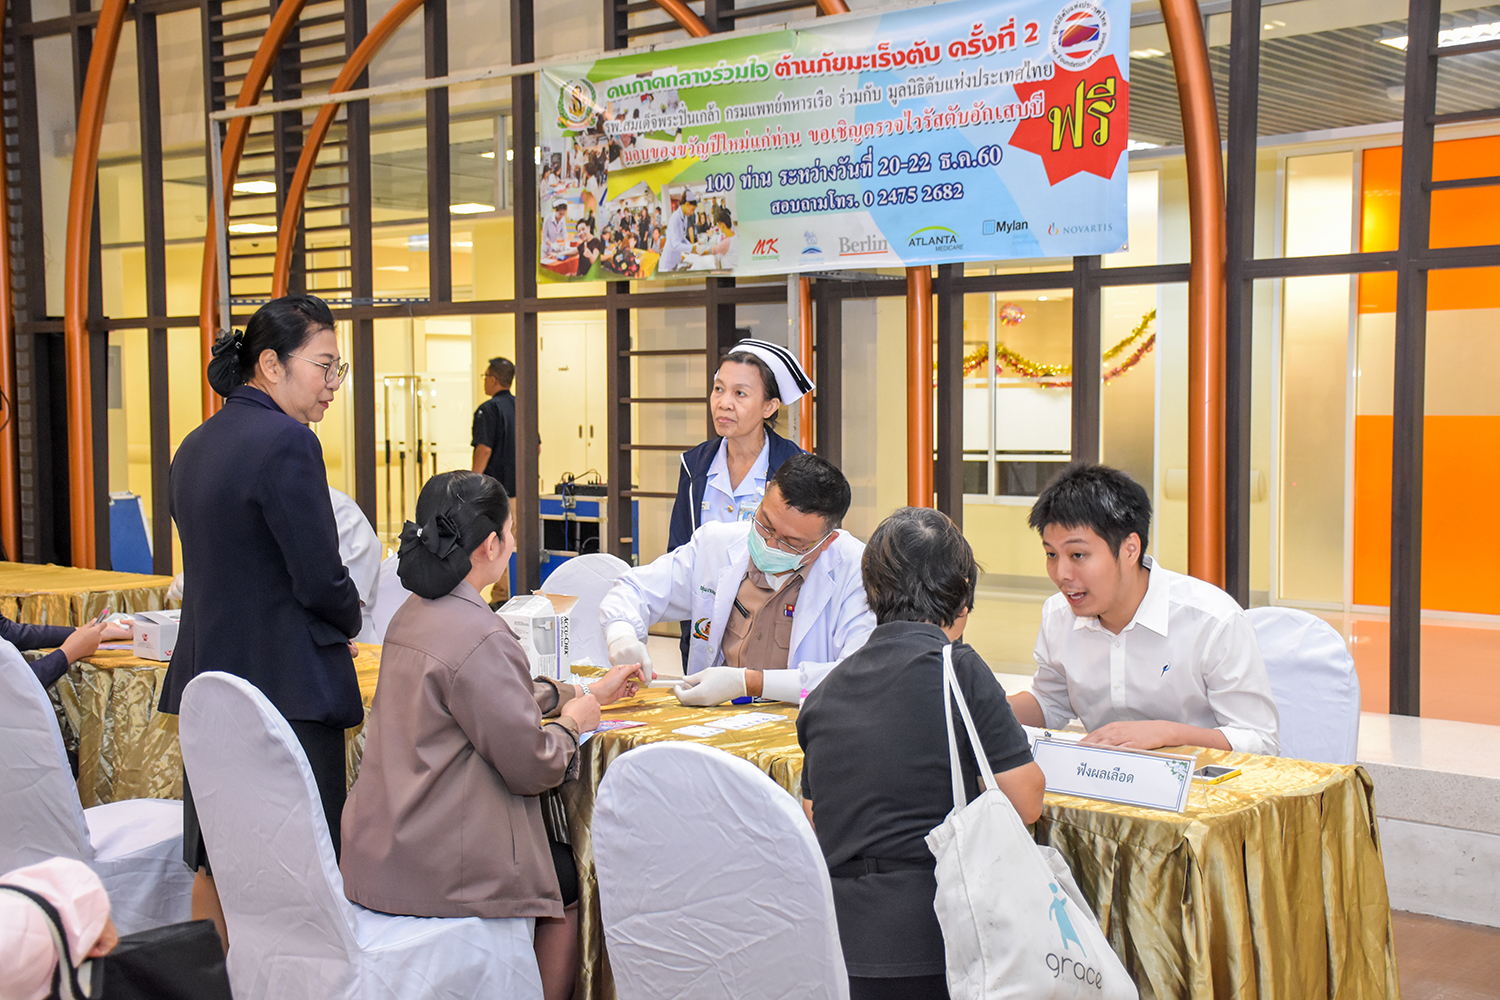 โรงพยาบาลสมเด็จพระปิ่นเกล้า กรมแพทย์ทหารเรือ ร่วมกับ มูลนิธิตับแห่งประเทศไทย จัดกิจกรรม " คนภาคกลางร่วมใจ ต้านภัยมะเร็งตับ " ครั้งที่ 2